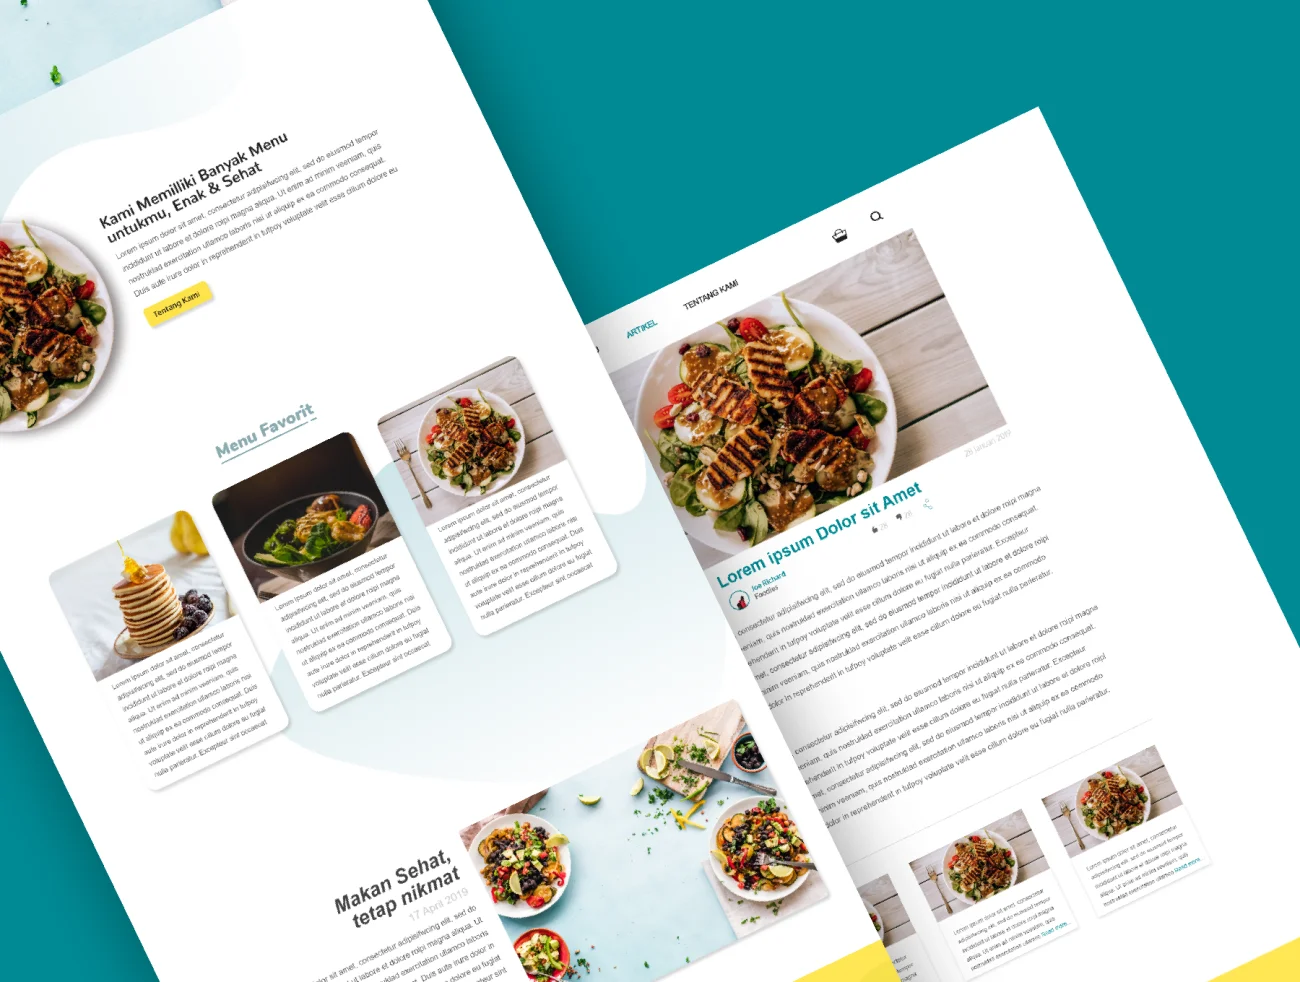 Healthy Food Website Template 响应式设计多平台健康食品网站模板-UI/UX-到位啦UI